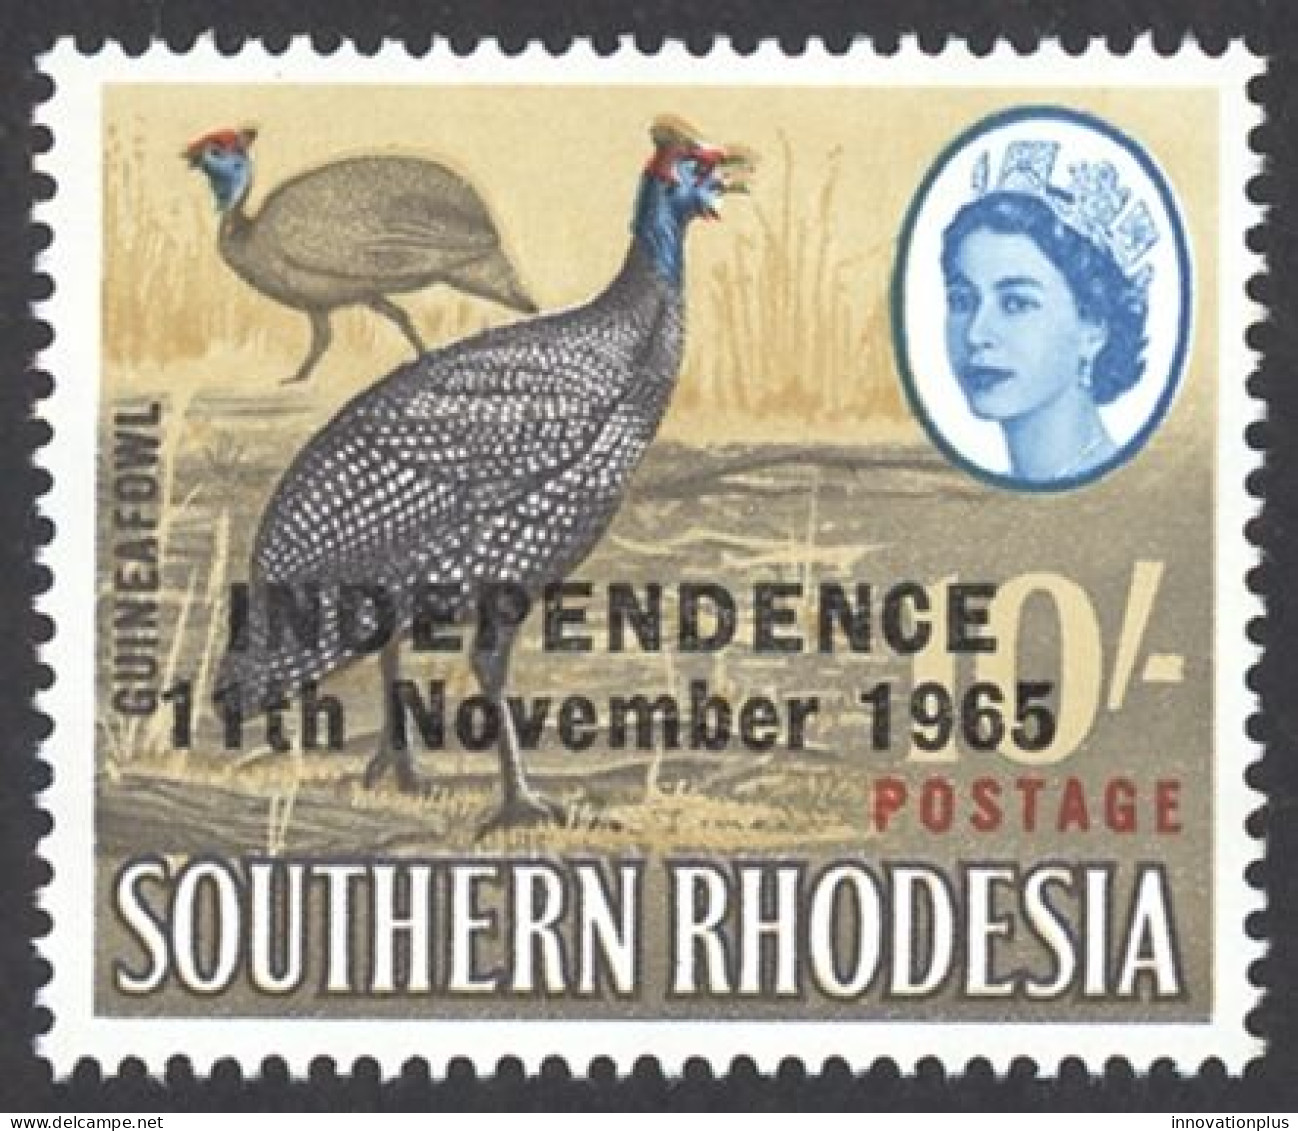 Rhodesia Sc# 220 MNH 1966 10sh Overprint - Rhodesien (1964-1980)